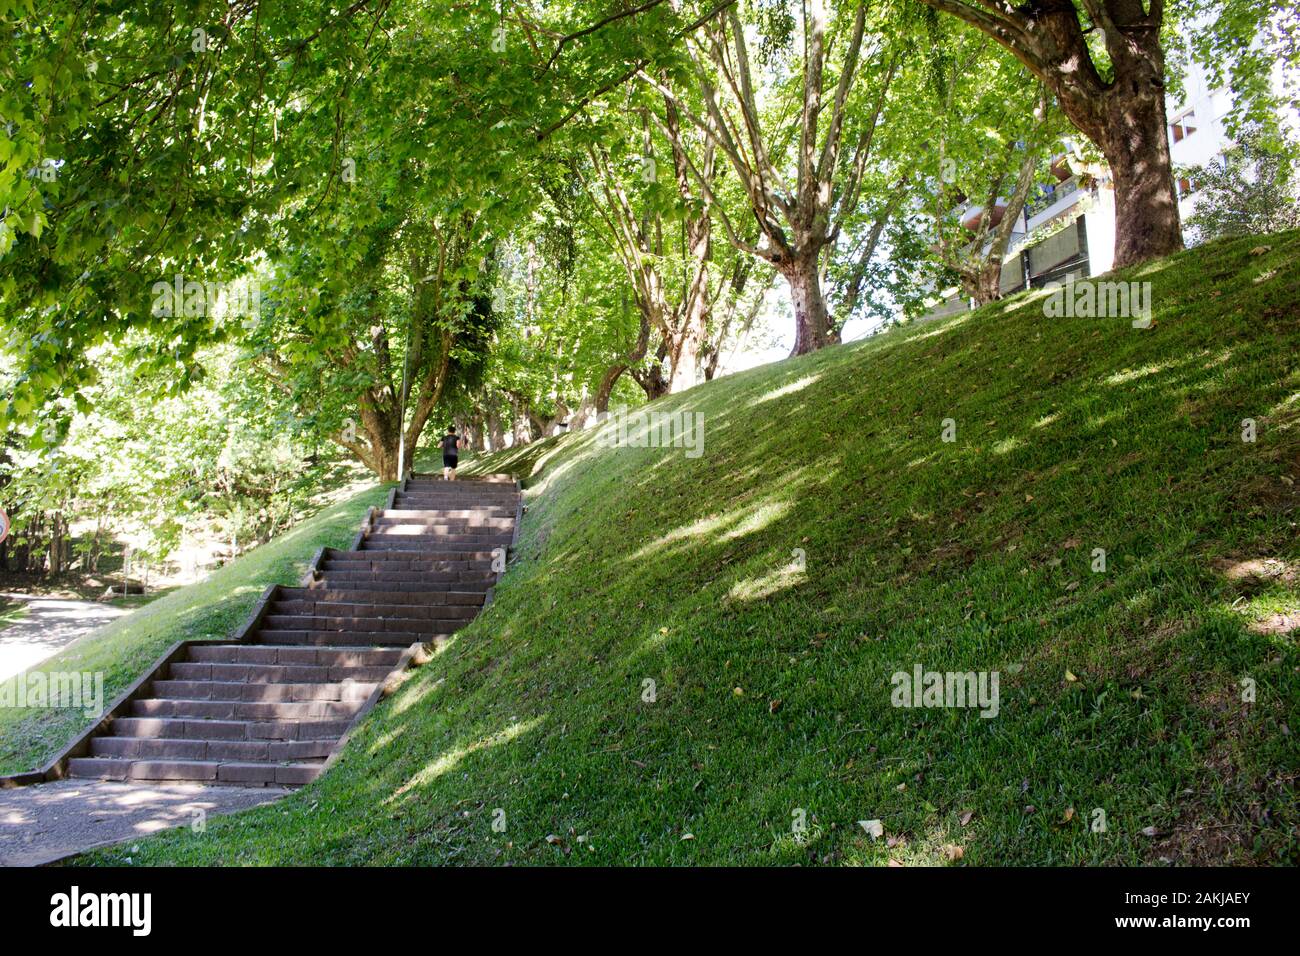 Parco urbano con alberi, ad uso della popolazione per il tempo libero, jogging, passeggiate, passeggiate. Foto Stock